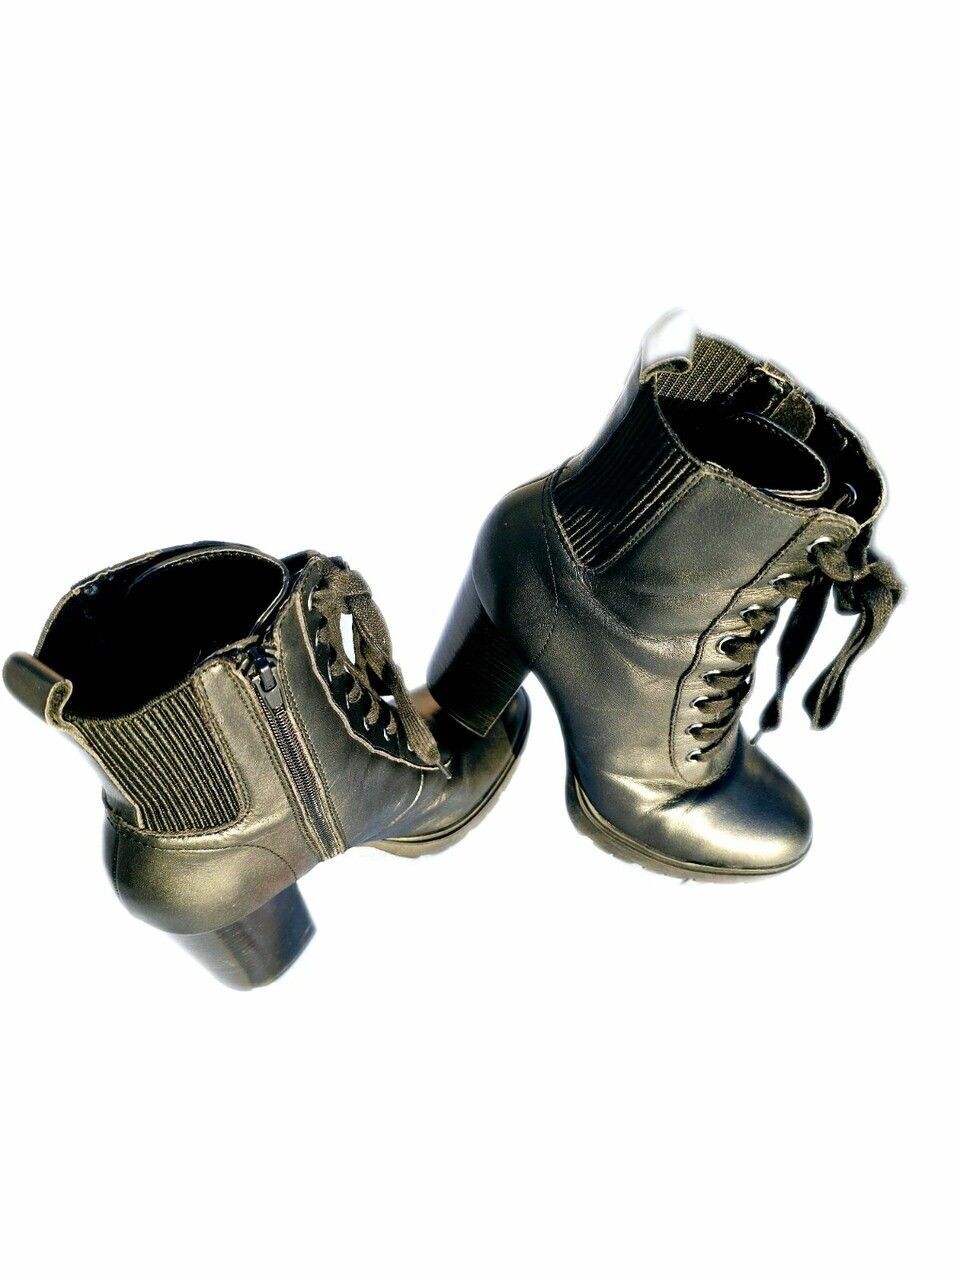 Designer Steve Madden Black Heel/Boots With A Side Zip